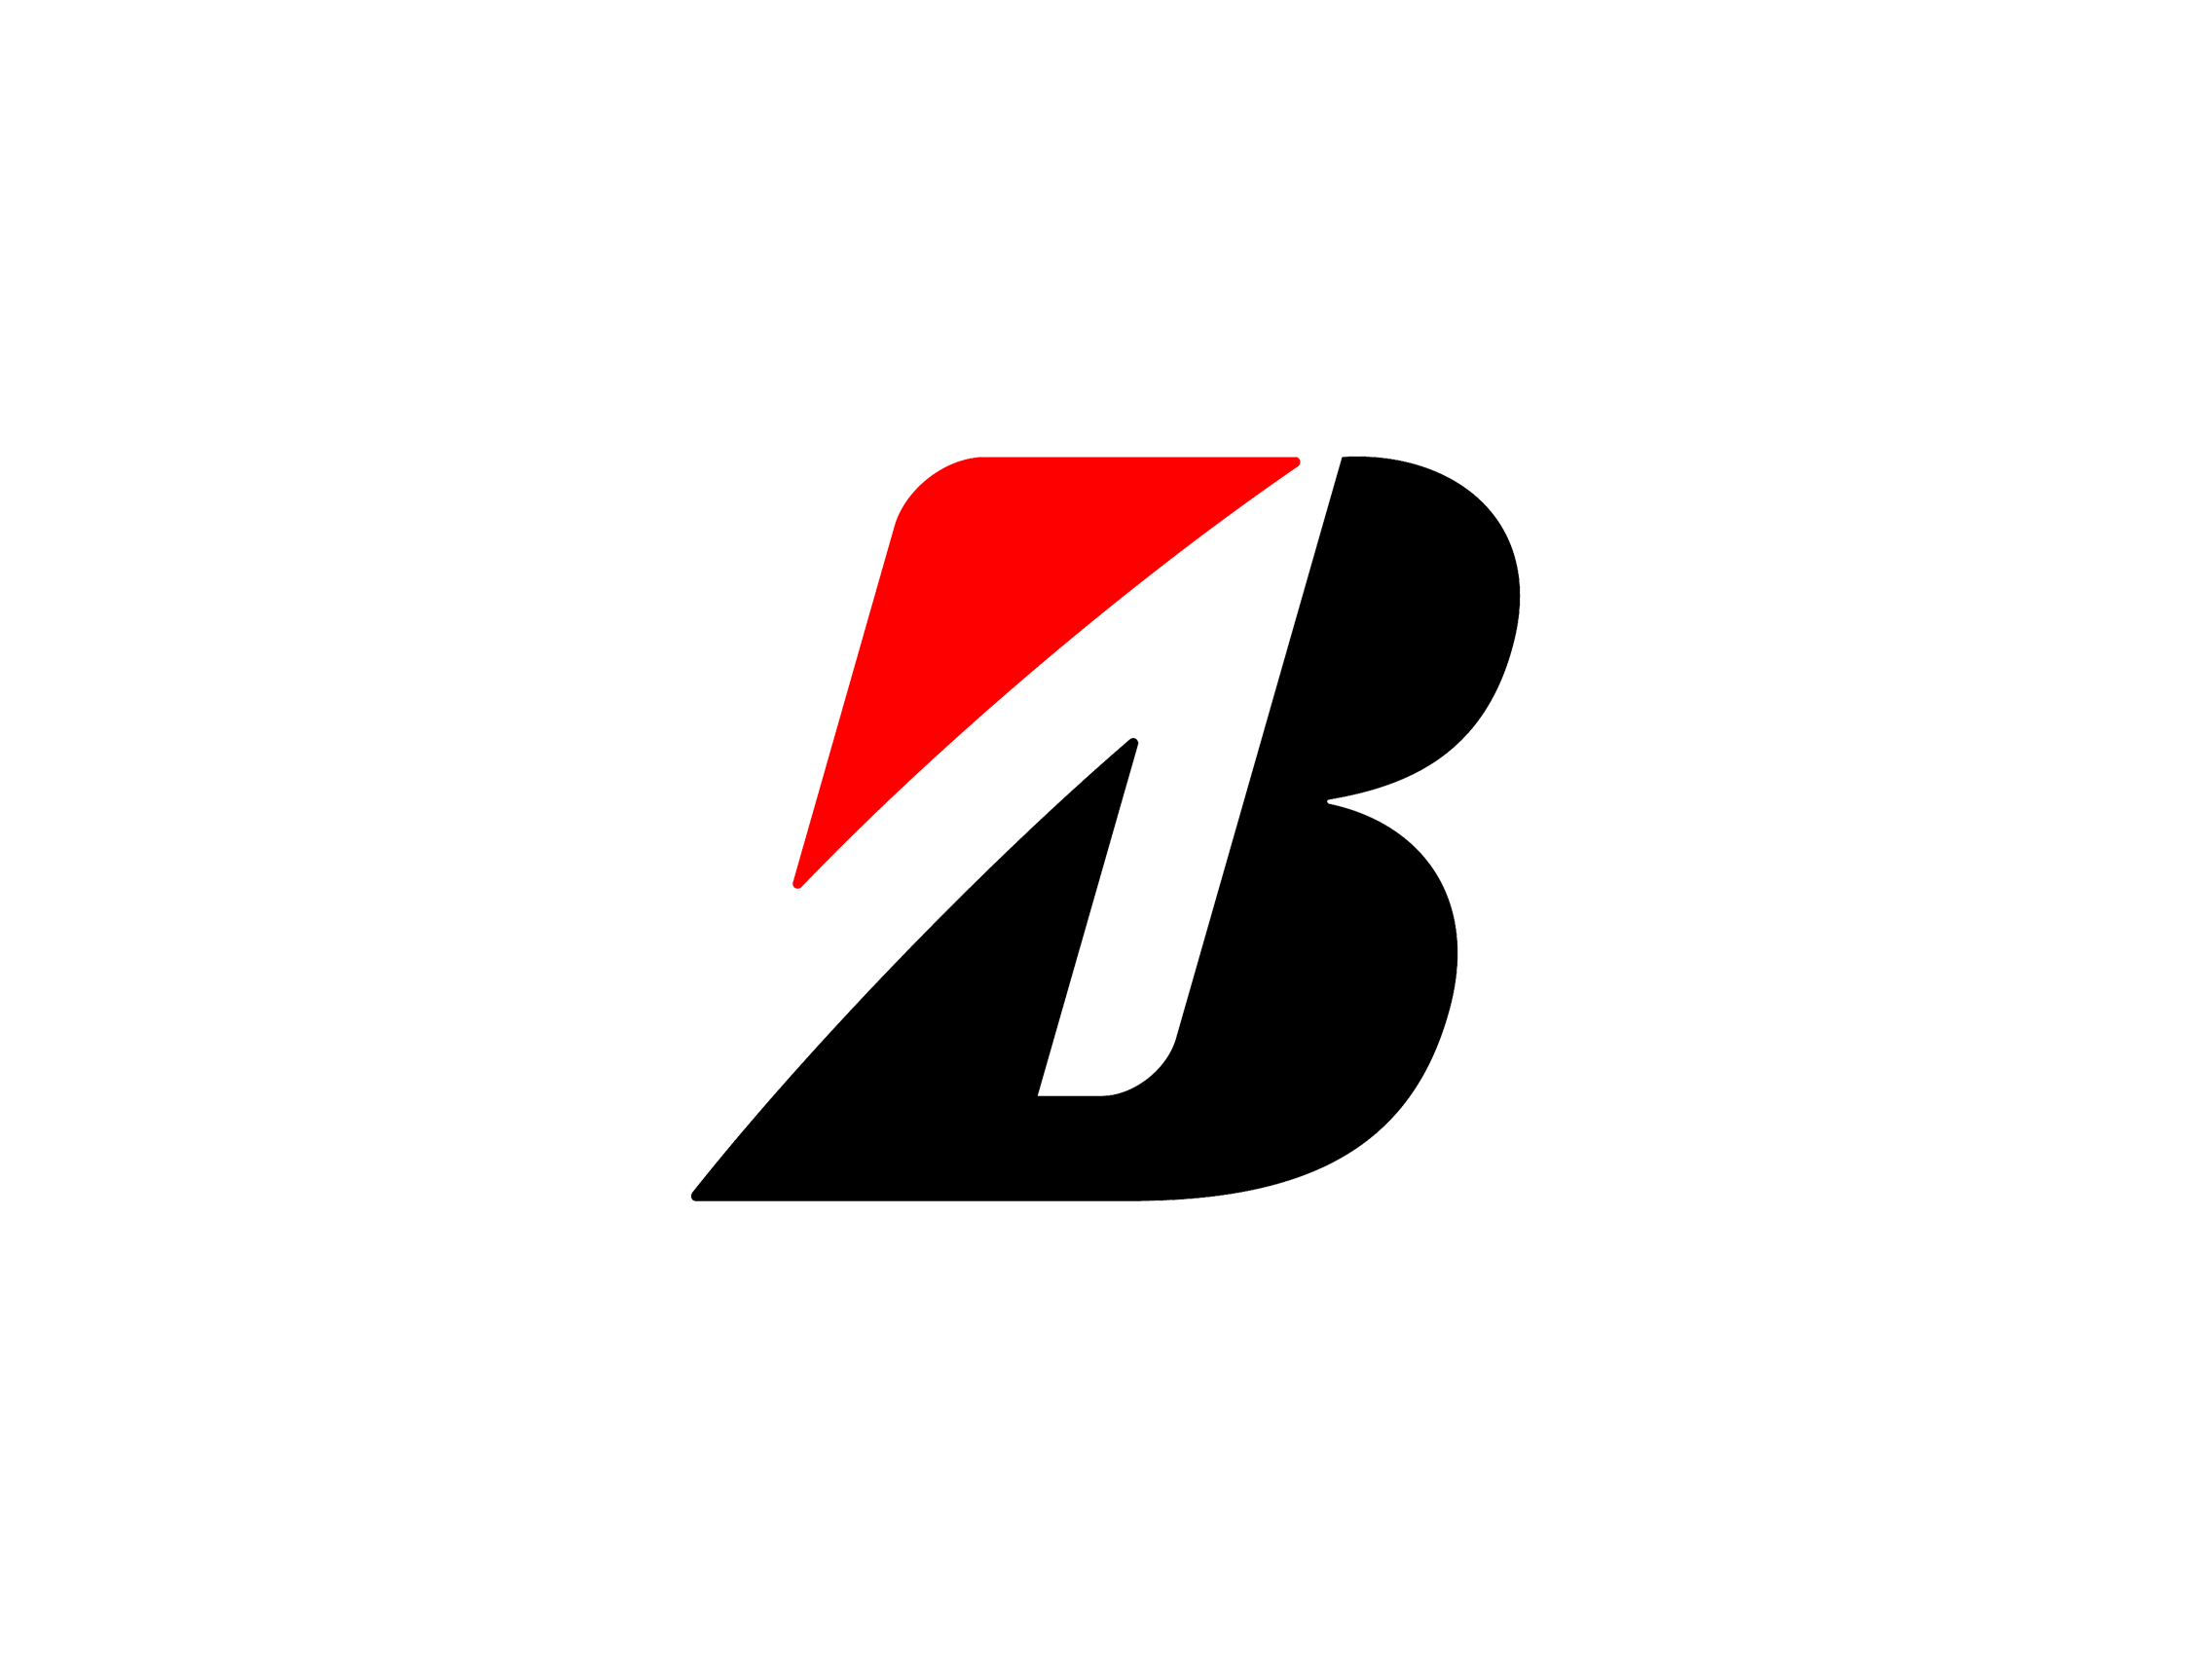 B Logo - Image result for B logos. Logo Design. Logos, Logo design, Company